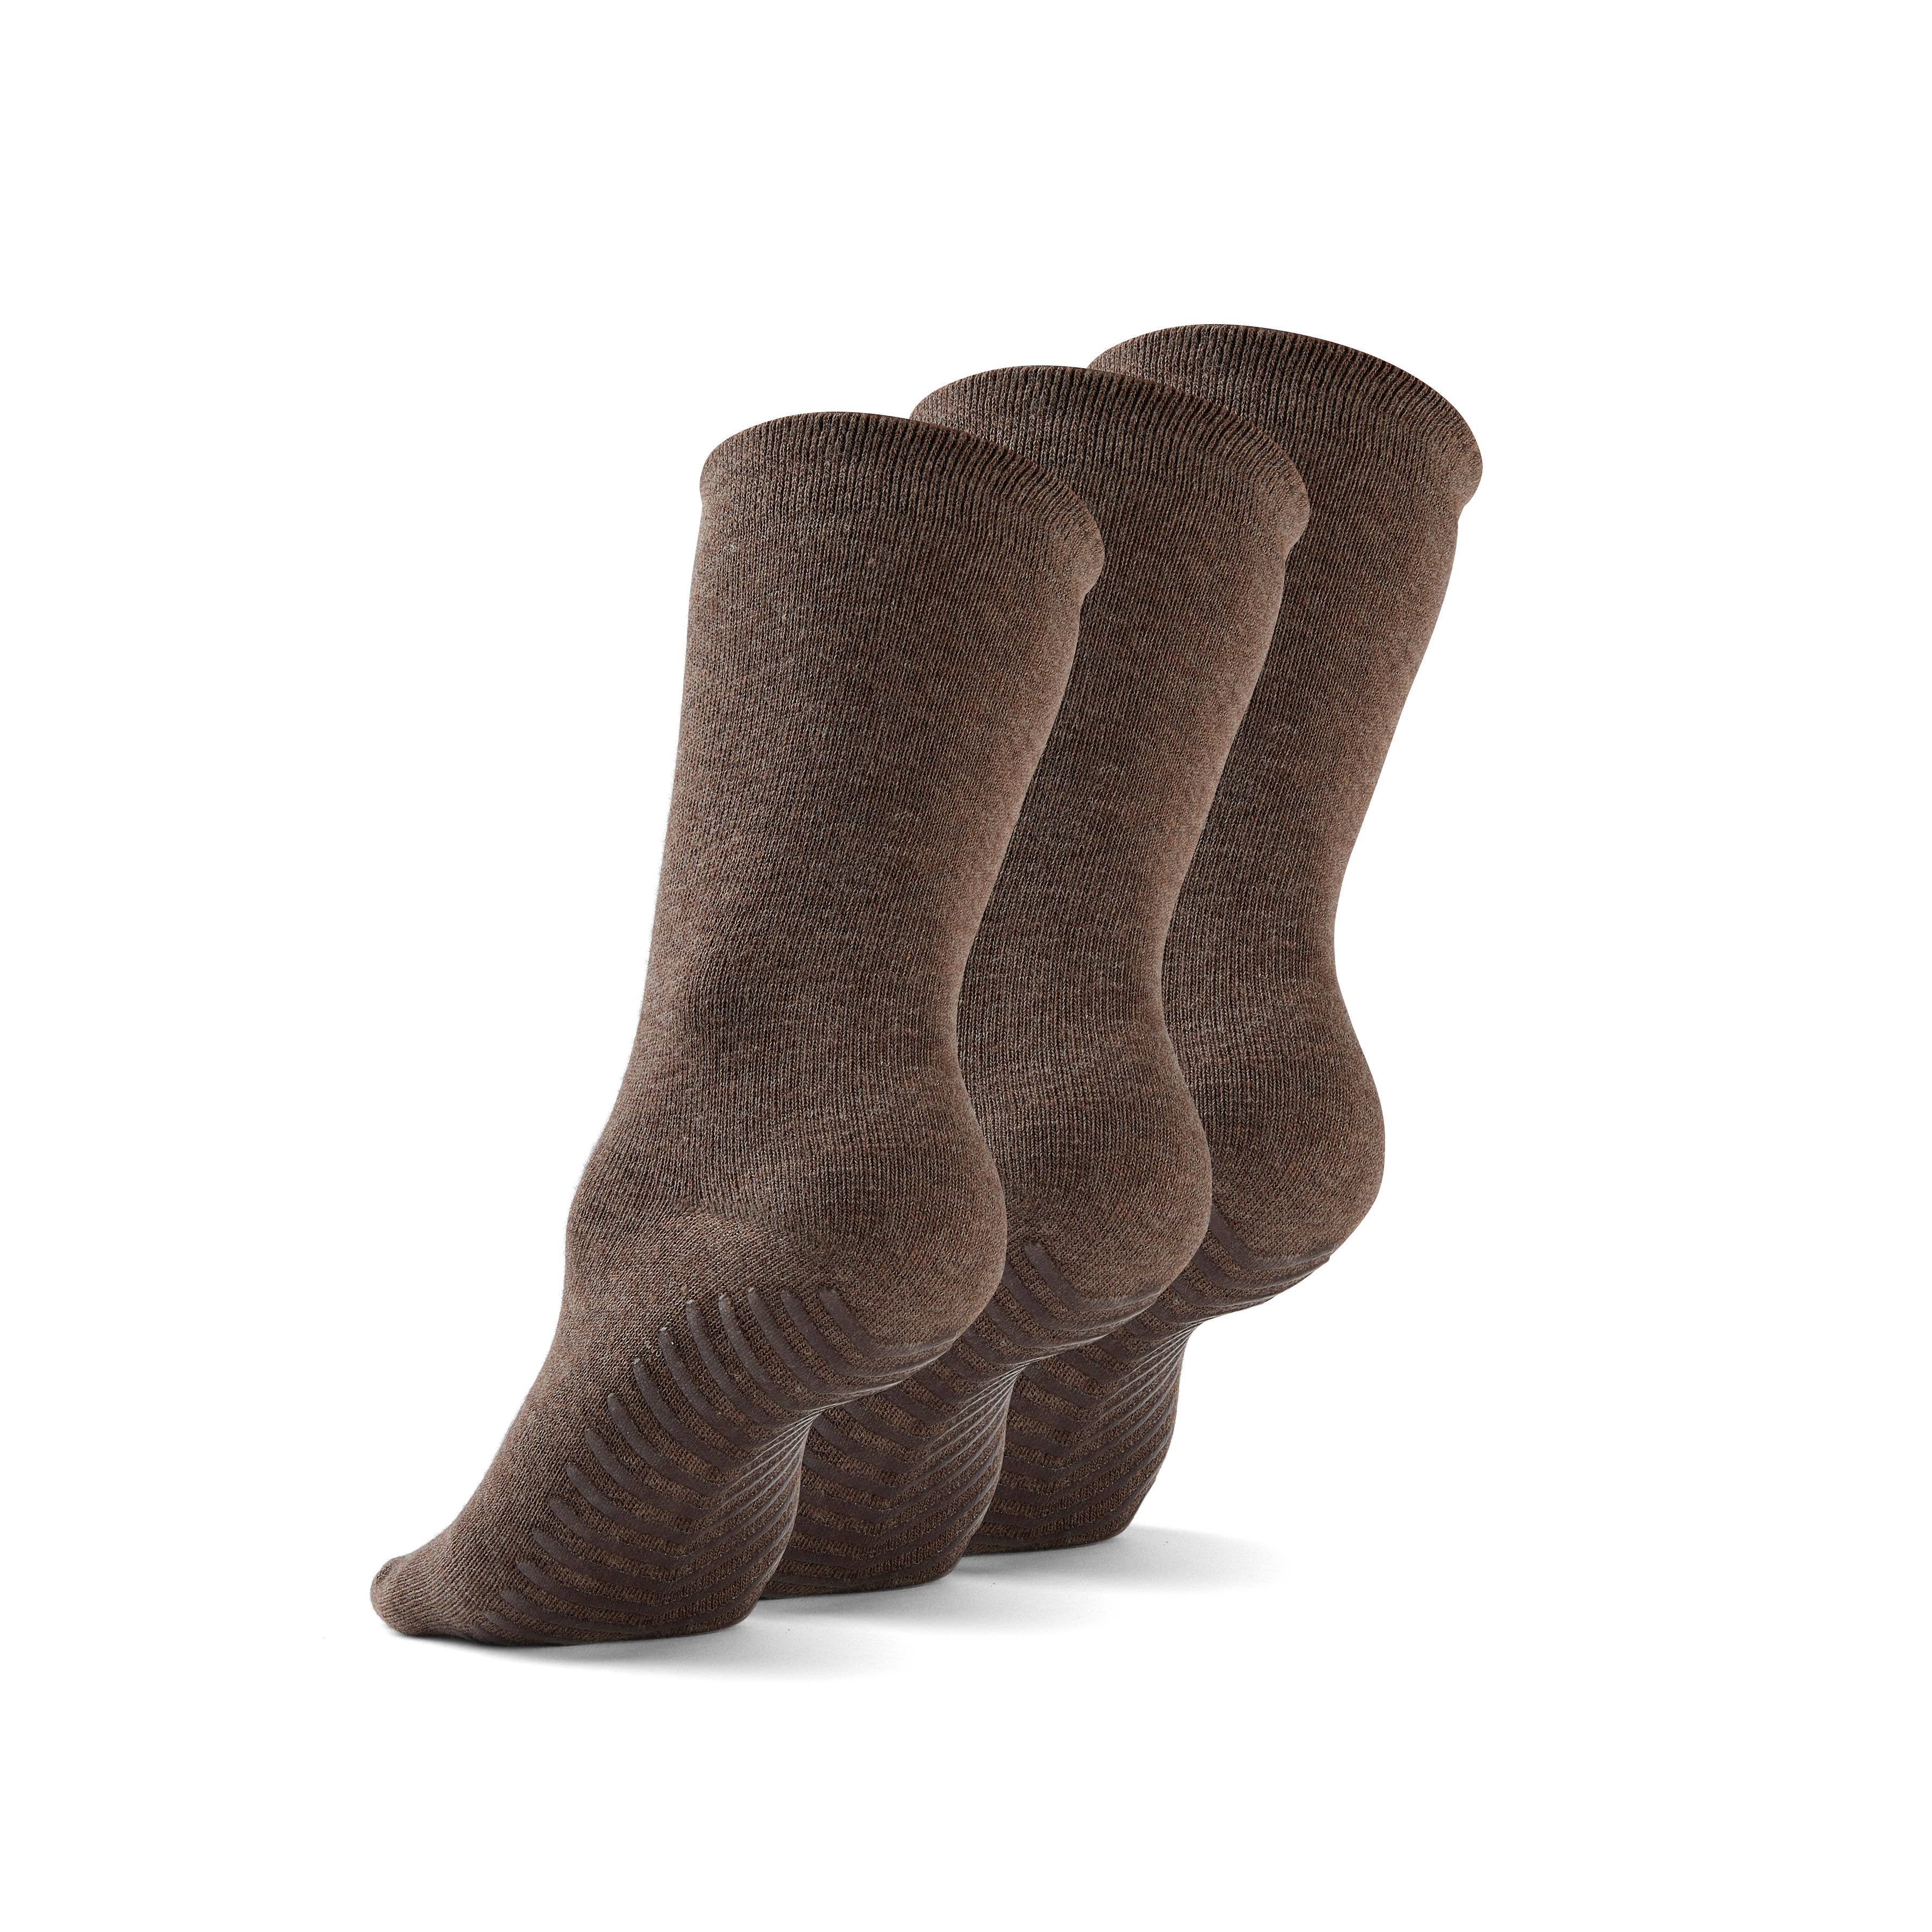 Gripjoy Original Crew Grip Socks - Non Slip Socks for Women - Socks with  Grippers for Women - 3 Pairs